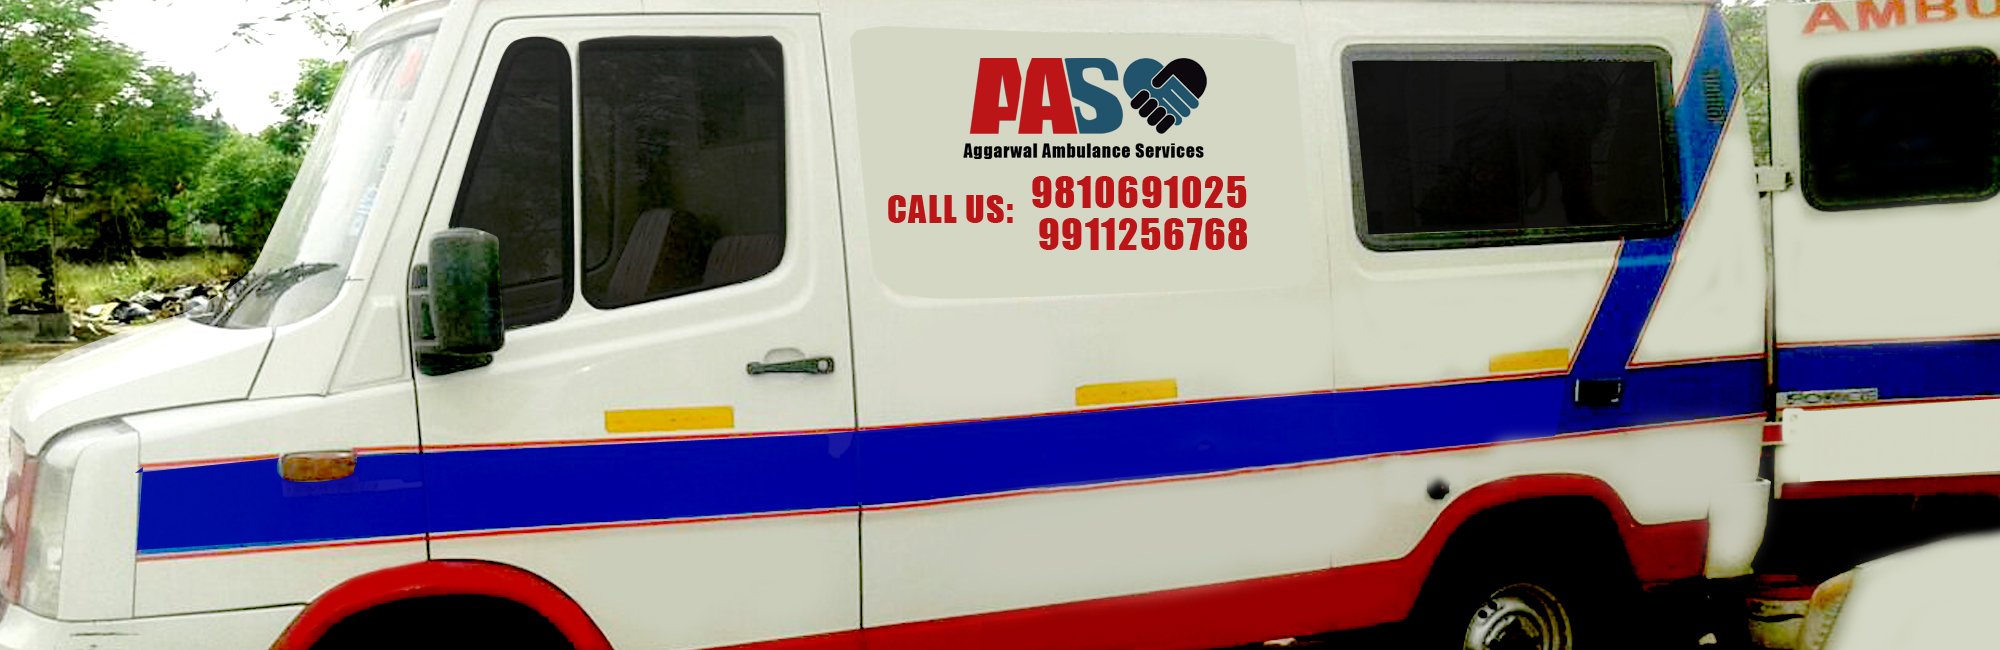 Ambulance service in Delhi